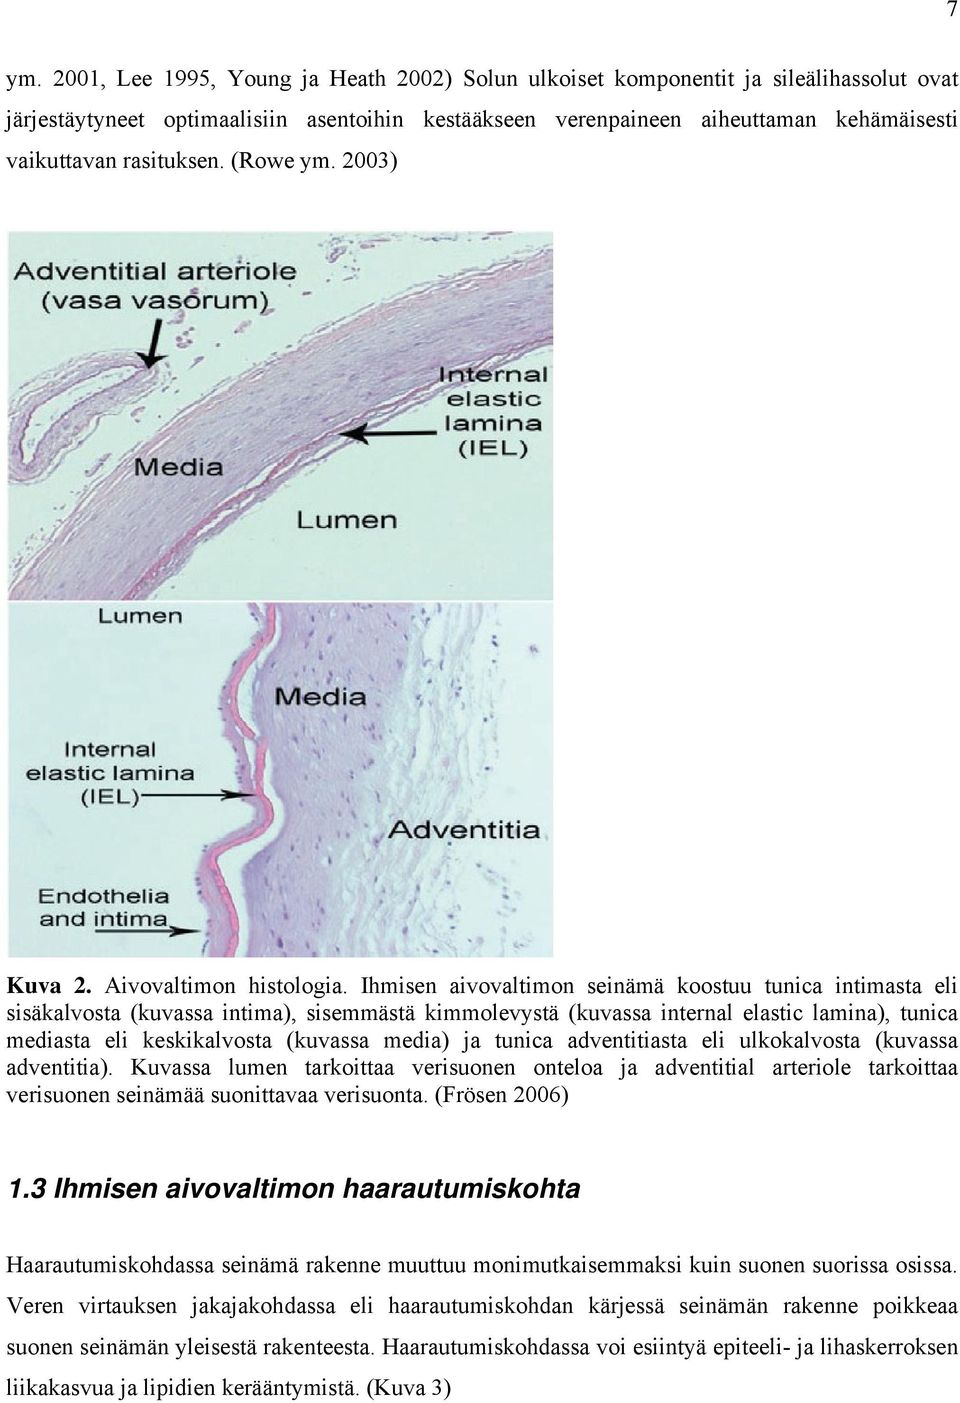 Ihmisen aivovaltimon seinämä koostuu tunica intimasta eli sisäkalvosta (kuvassa intima), sisemmästä kimmolevystä (kuvassa internal elastic lamina), tunica mediasta eli keskikalvosta (kuvassa media)